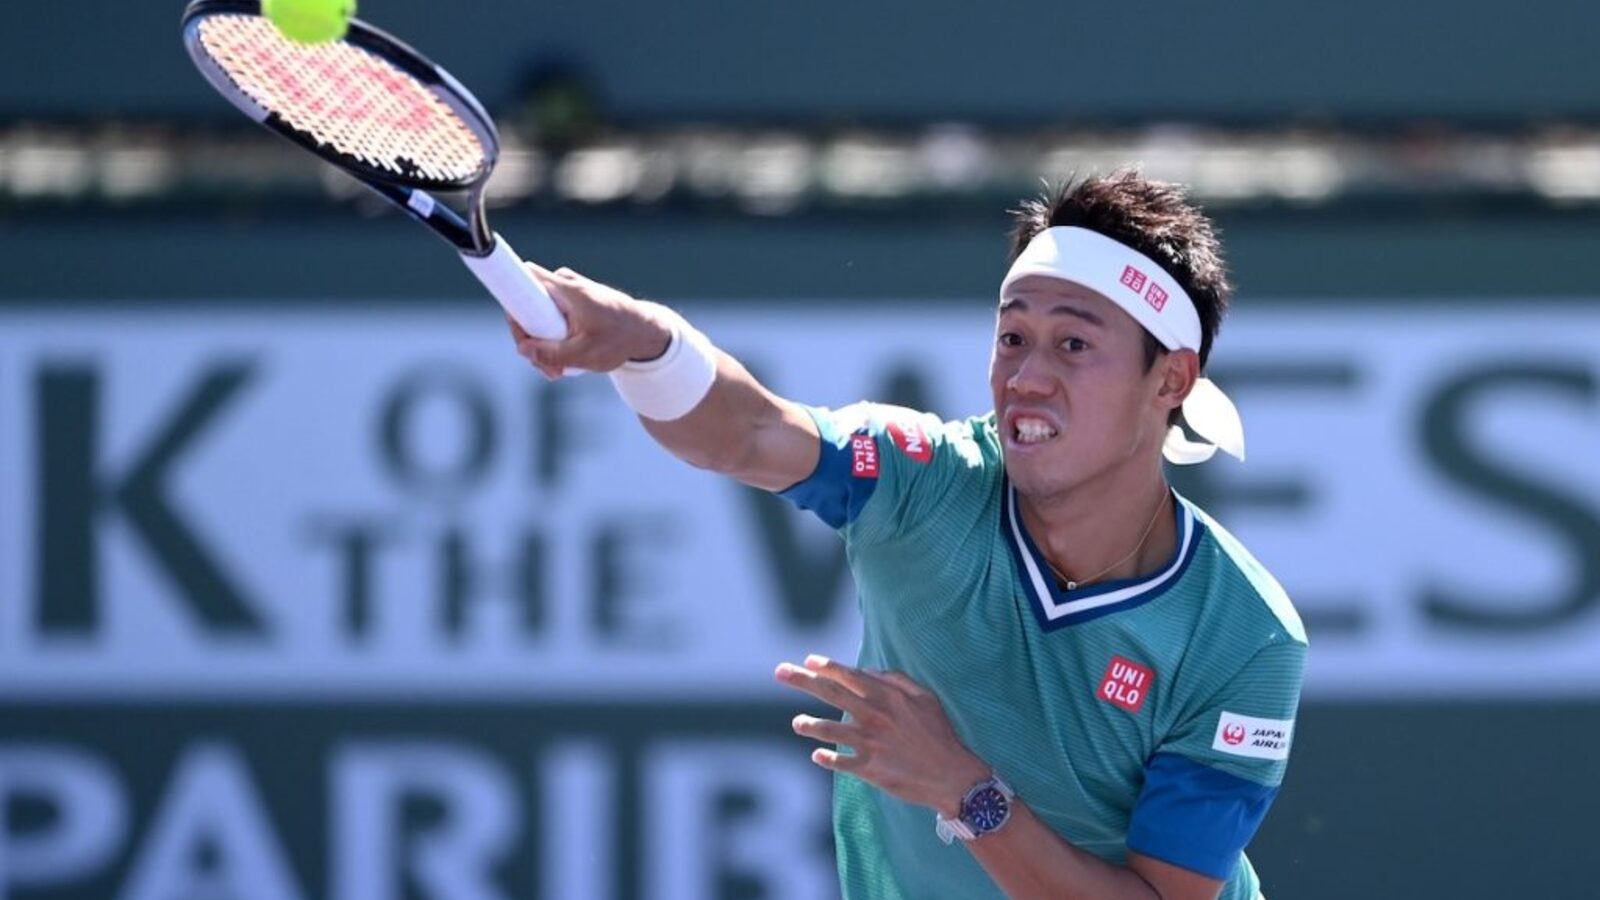 2014 Finalist Kei Nishikori Withdraws From US Open